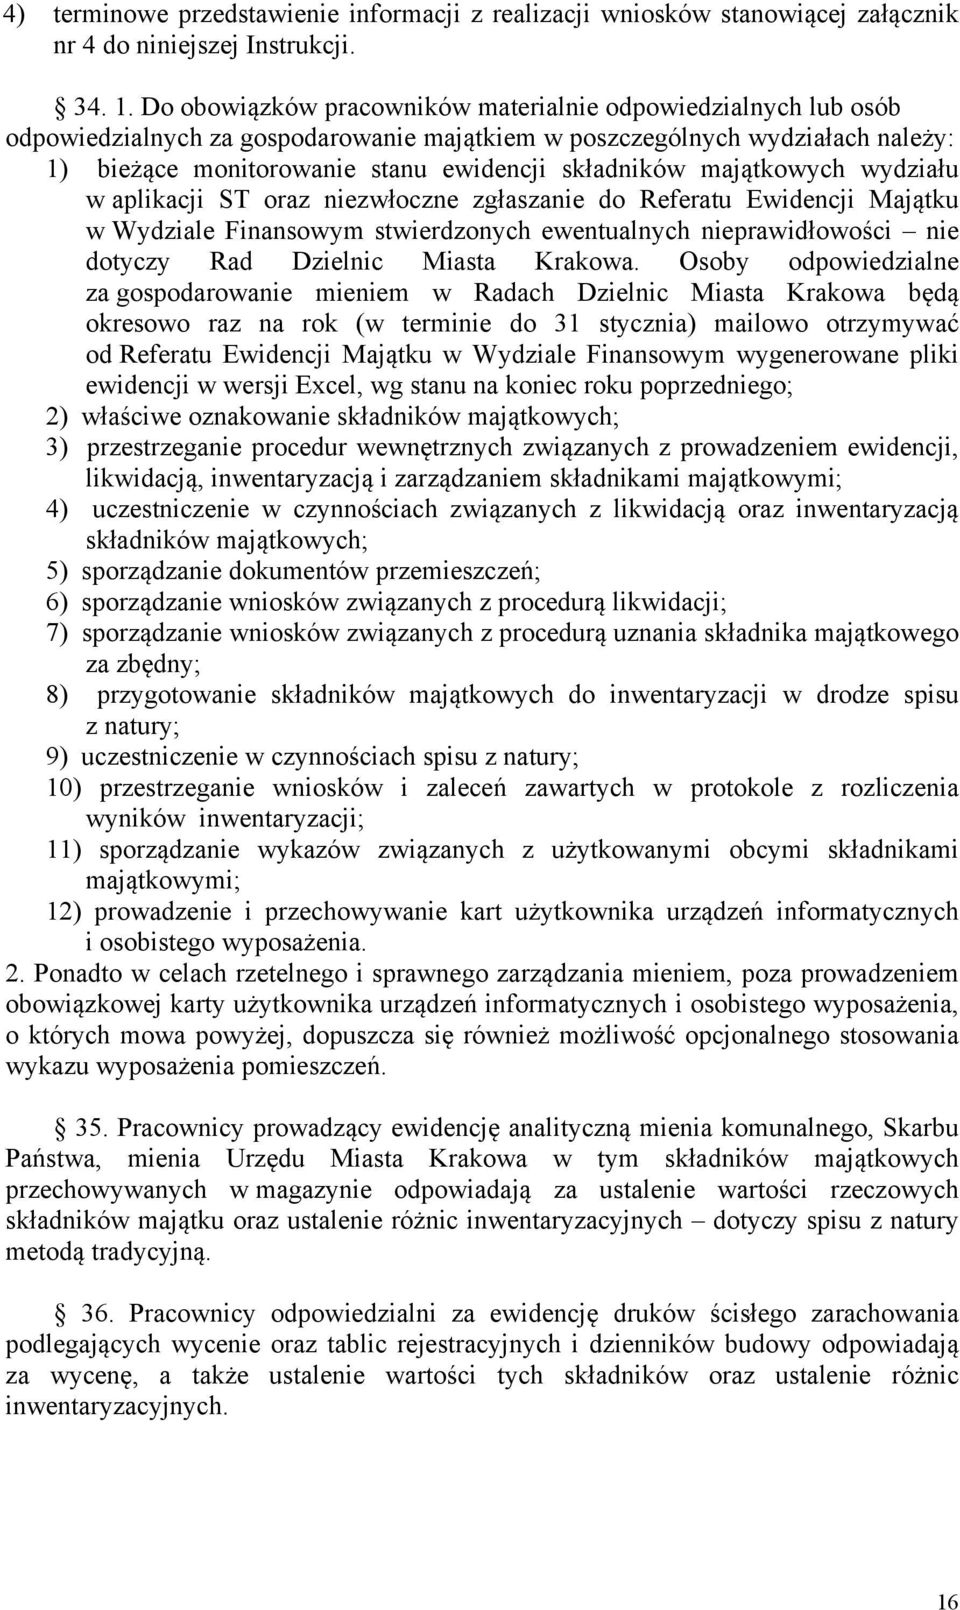 majątkowych wydziału w aplikacji ST oraz niezwłoczne zgłaszanie do Referatu Ewidencji Majątku w Wydziale Finansowym stwierdzonych ewentualnych nieprawidłowości nie dotyczy Rad Dzielnic Miasta Krakowa.